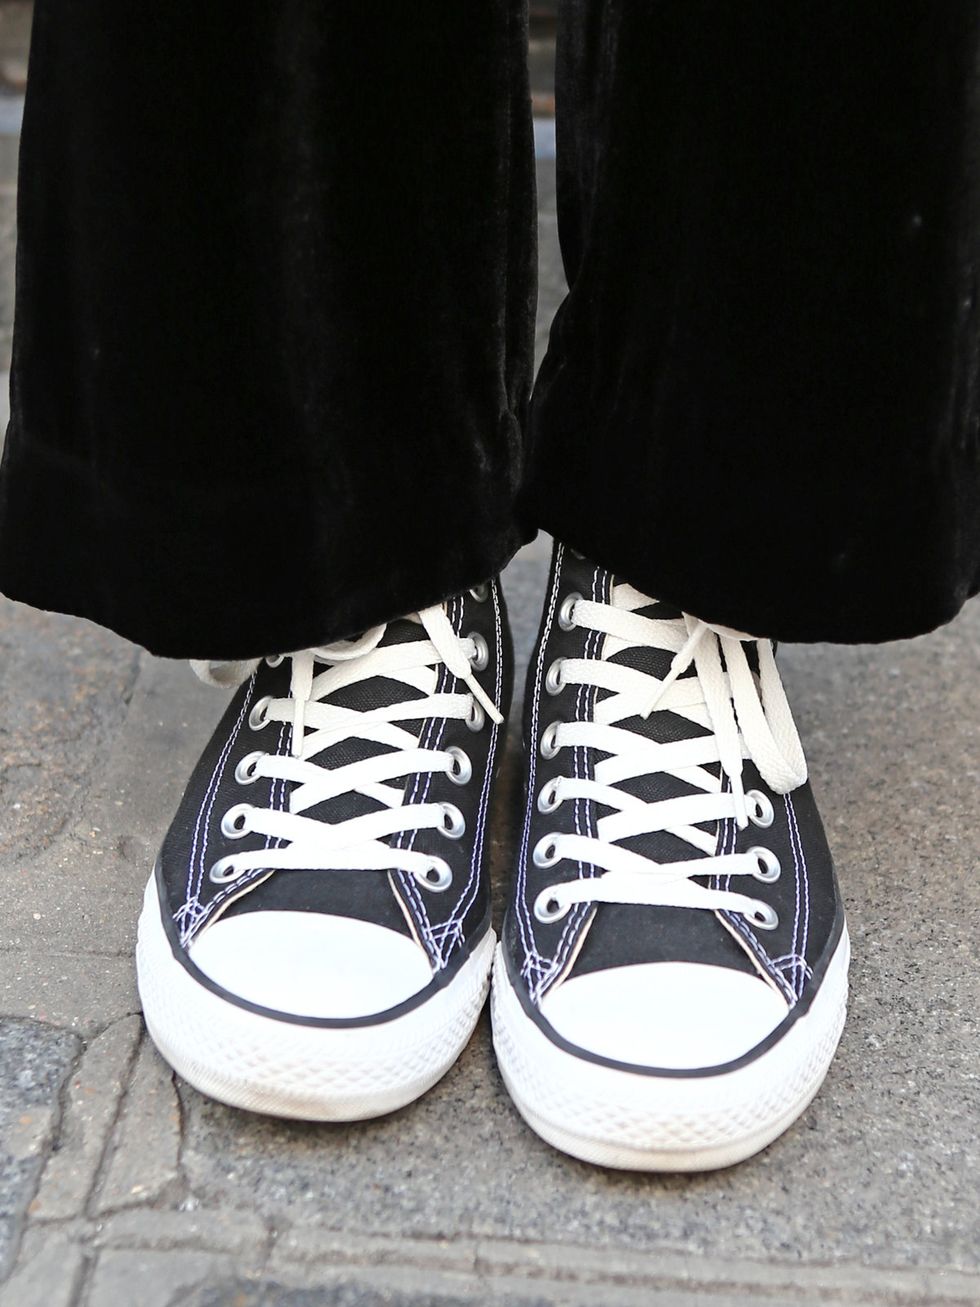 Footwear, Shoe, White, Style, Light, Fashion, Black, Grey, Sneakers, Walking shoe, 